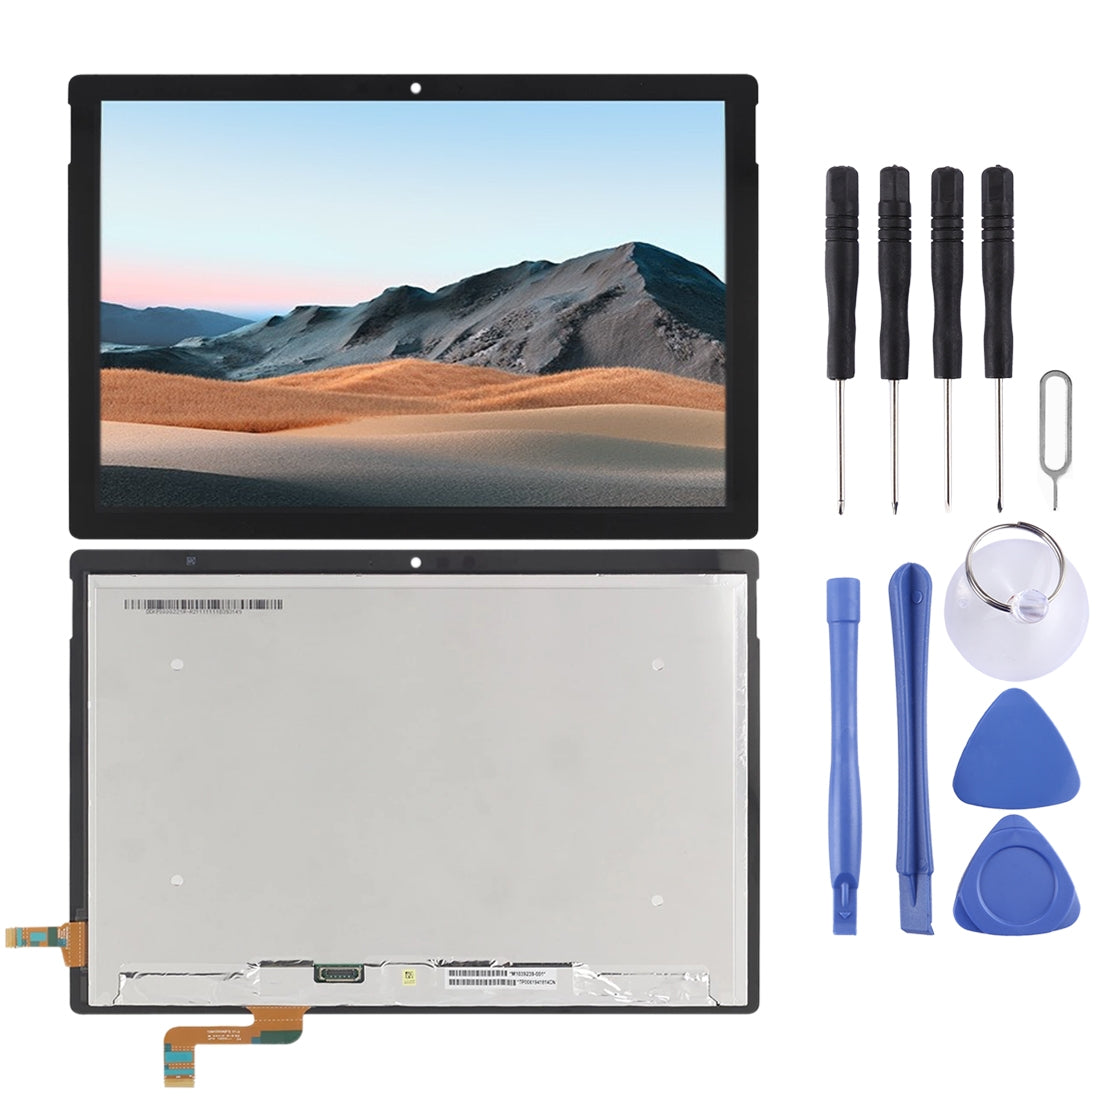 Pantalla LCD + Tactil Microsoft Surface Book 3 15 LP150QD1-SPA1 Negro